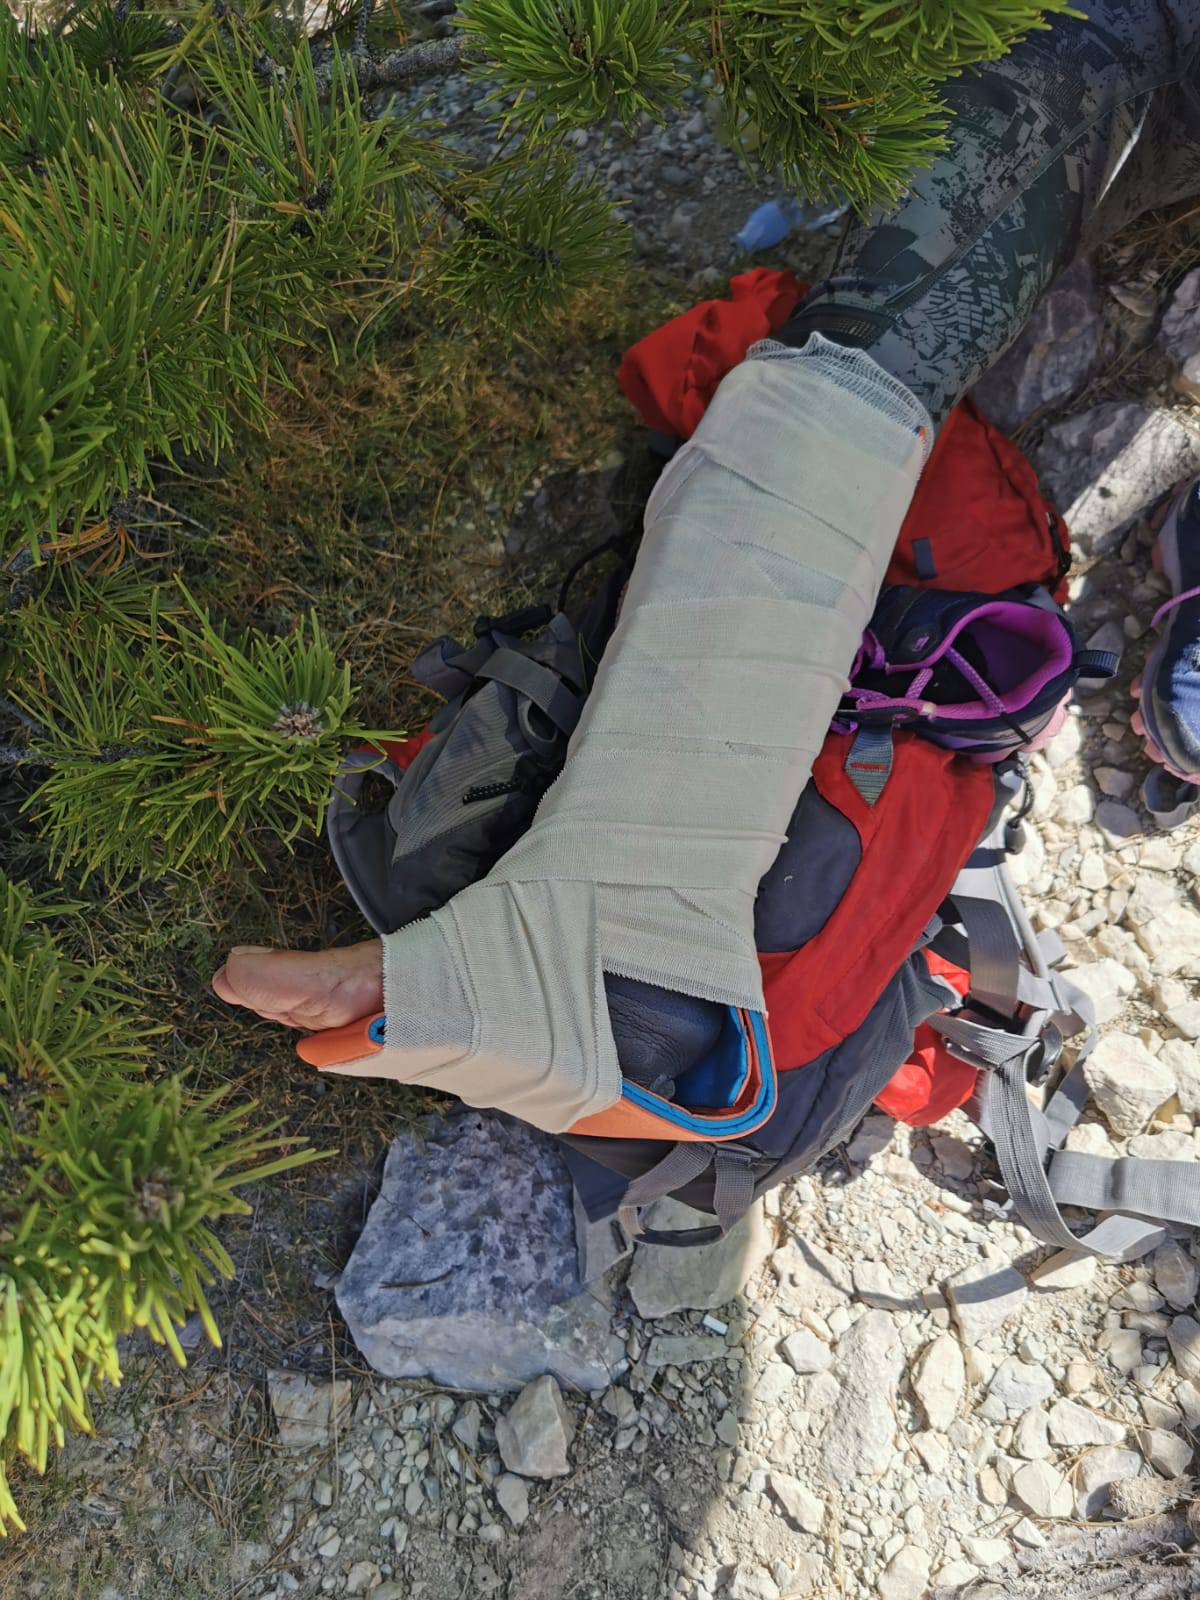 HGSS spasio planinarku (50): Teško je ozlijedila potkoljenicu